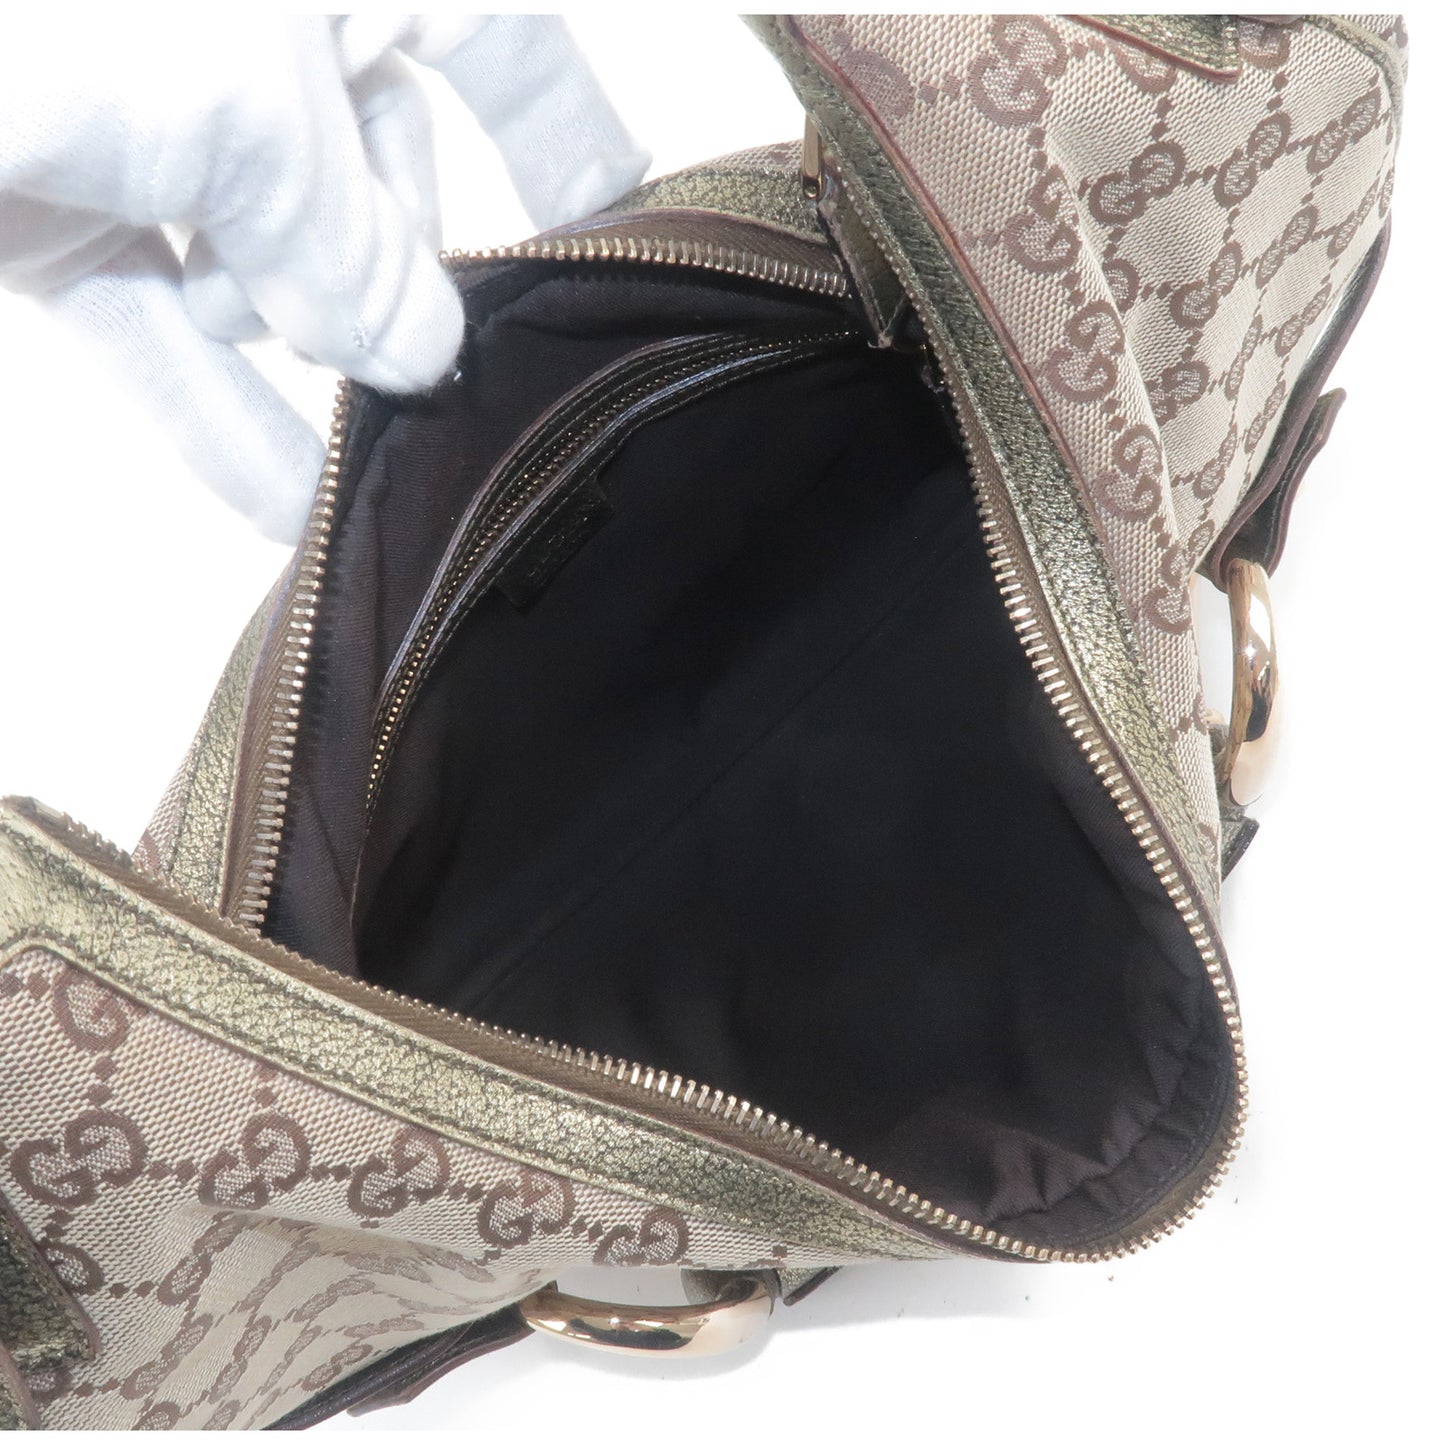 GUCCI Horsebit GG Canvas Leather Shoulder Bag Beige Gold 131026